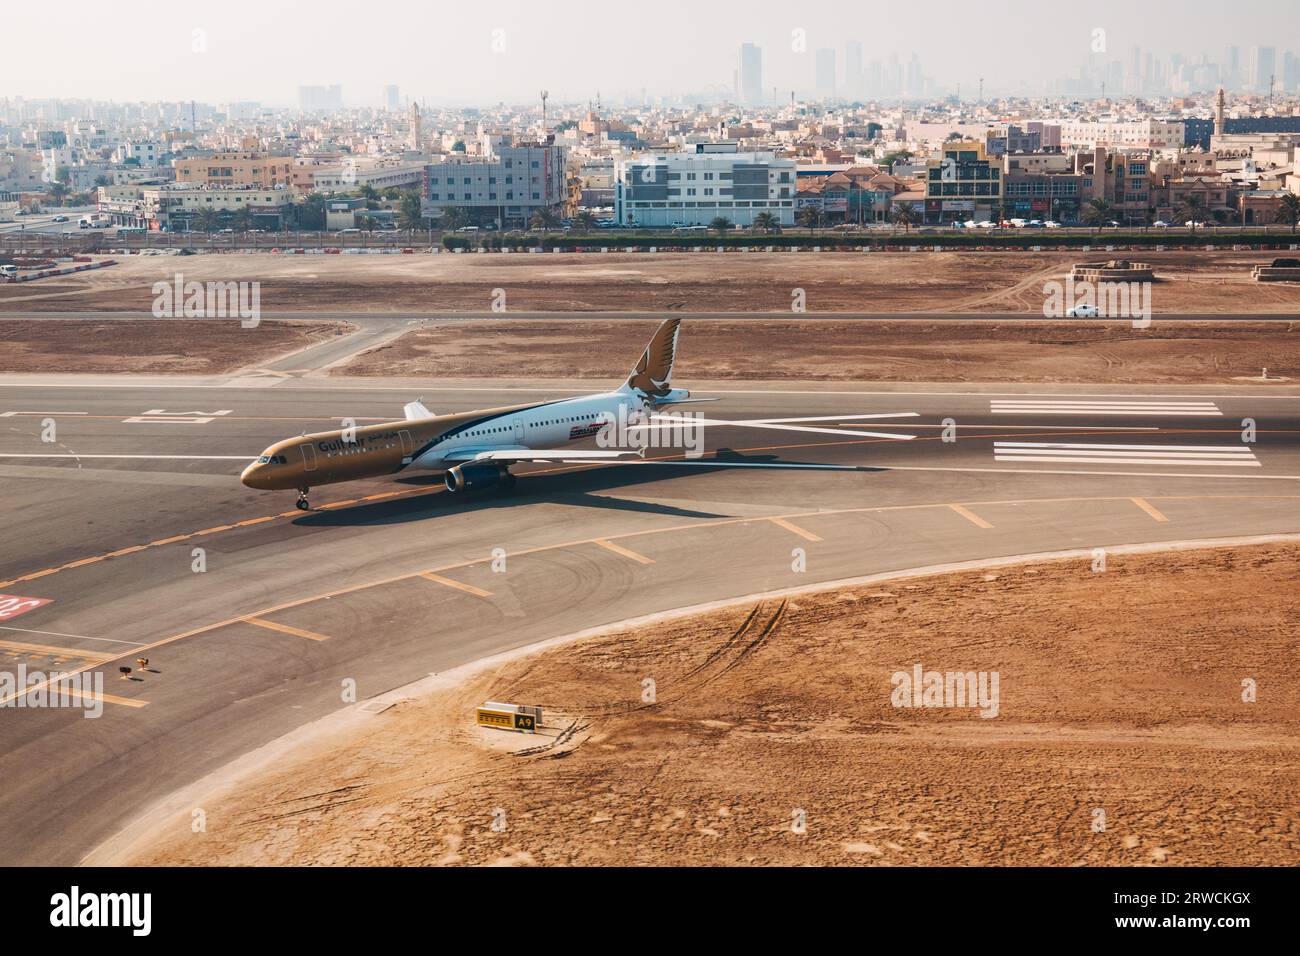 Un Airbus A321 Gulf Air in rullaggio all'aeroporto internazionale del Bahrain, in Bahrain, con Muharraq e Manama City fotografate dietro Foto Stock